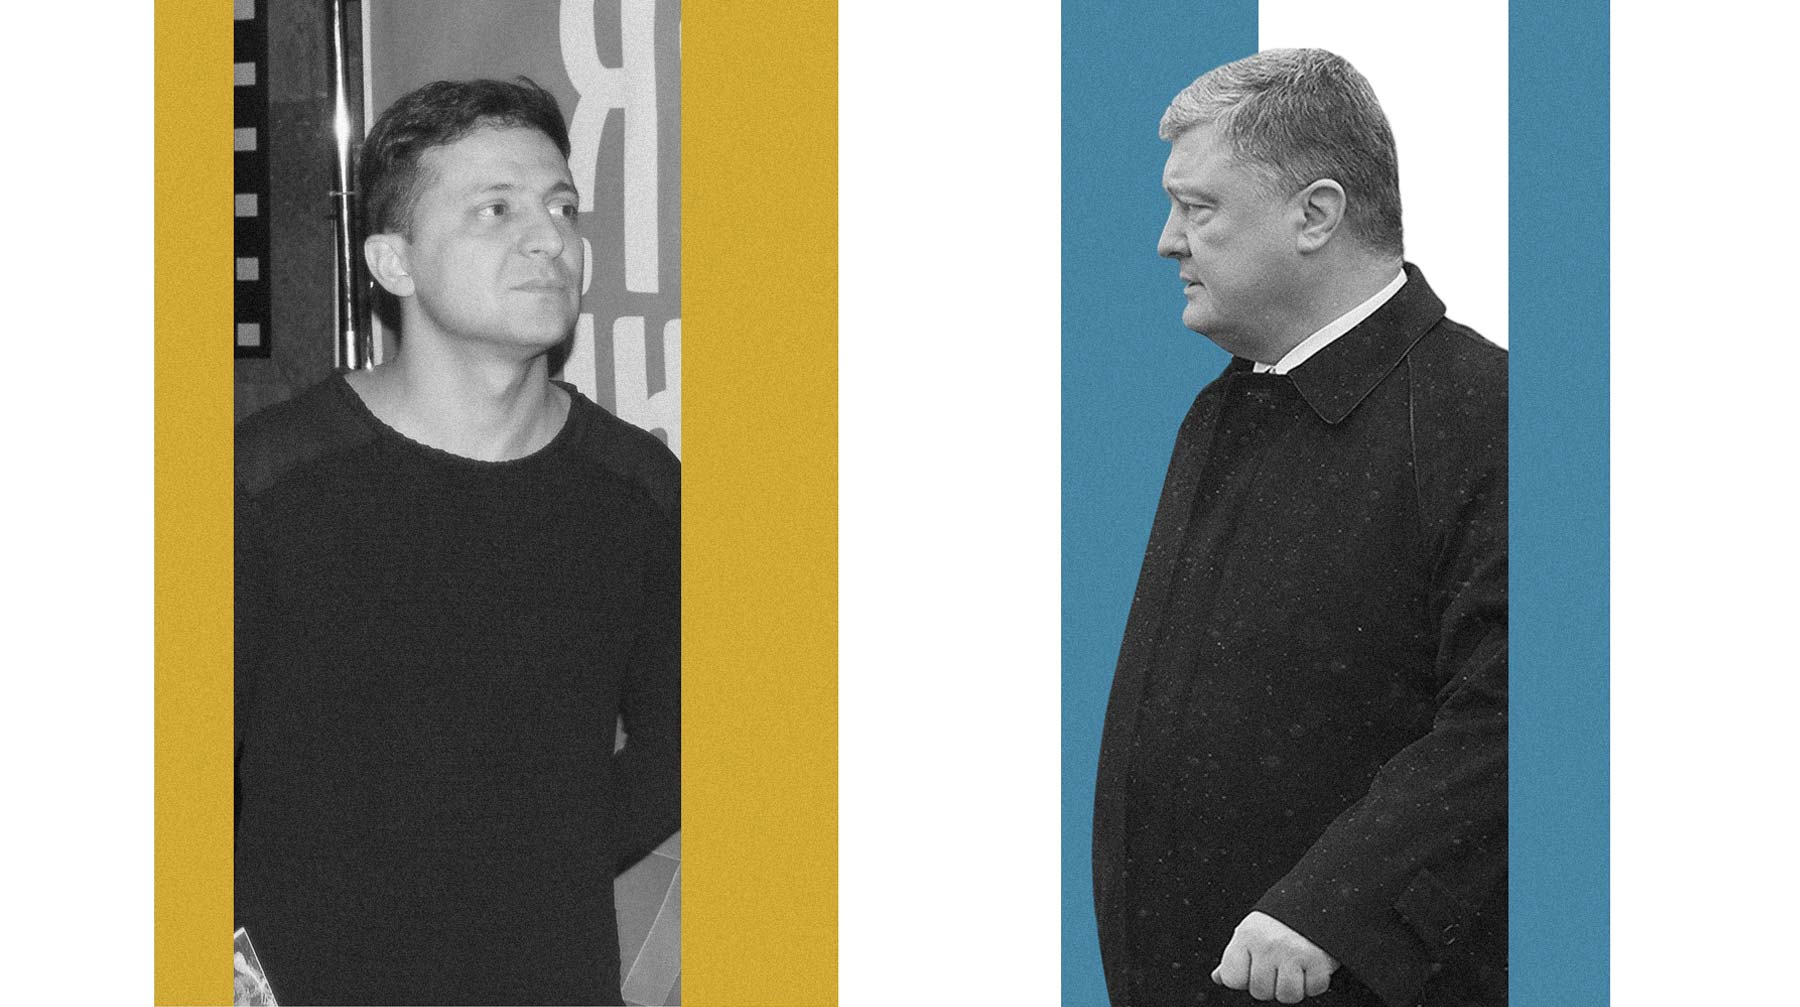 Прения кандидатов в президенты должны пройти 14 апреля Владимир Зеленский и Петр Порошенко